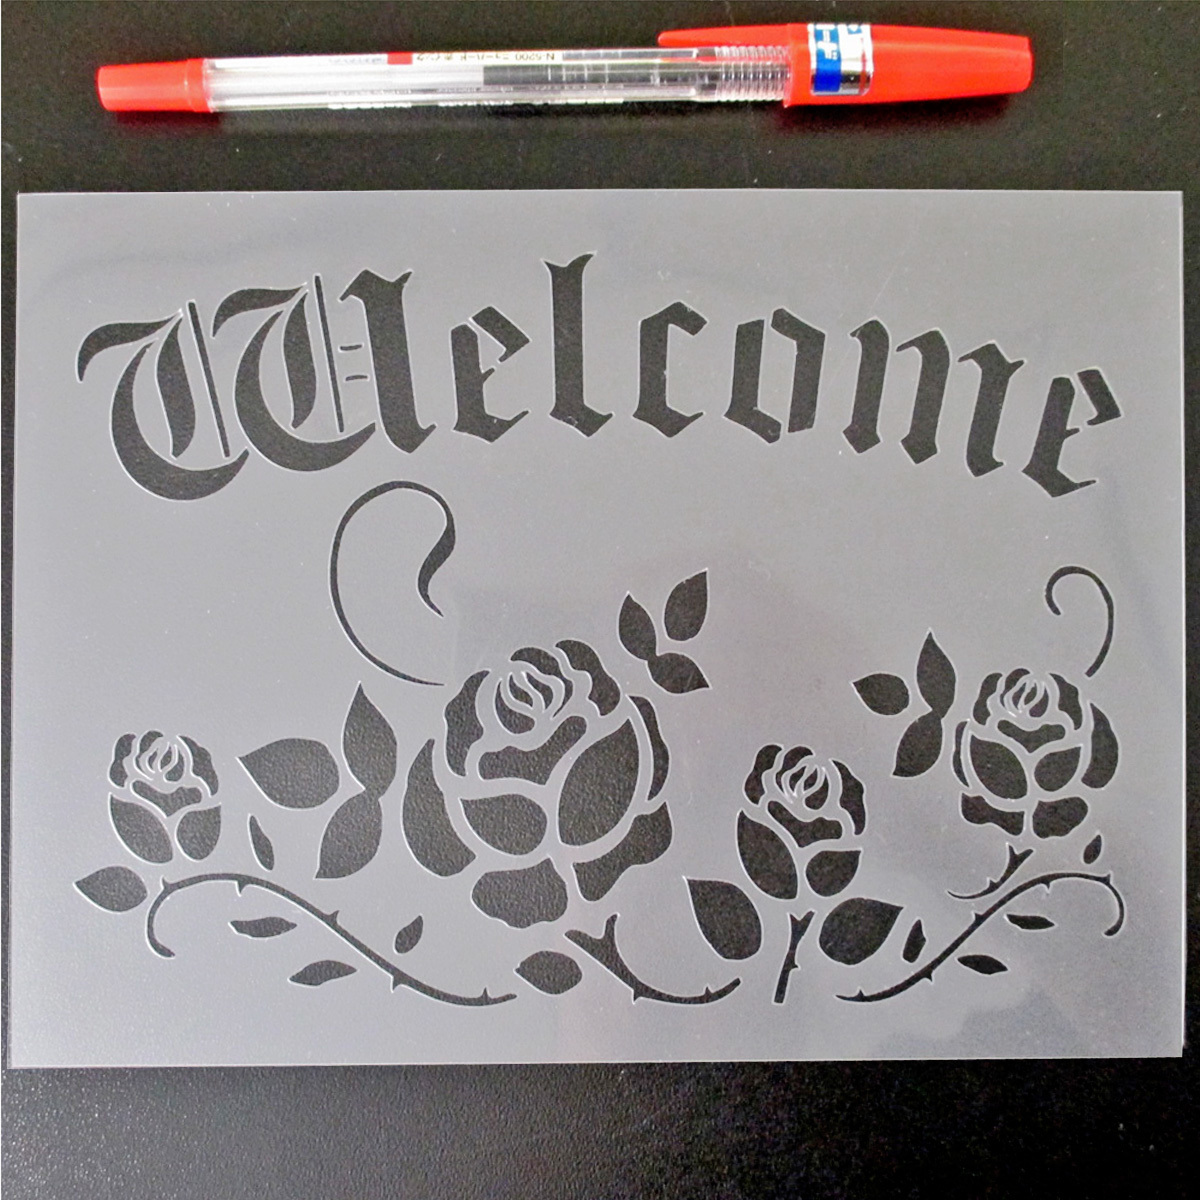 * роза . welcome 4 номер welcome панель stencil сиденье выкройки дизайн .NO511